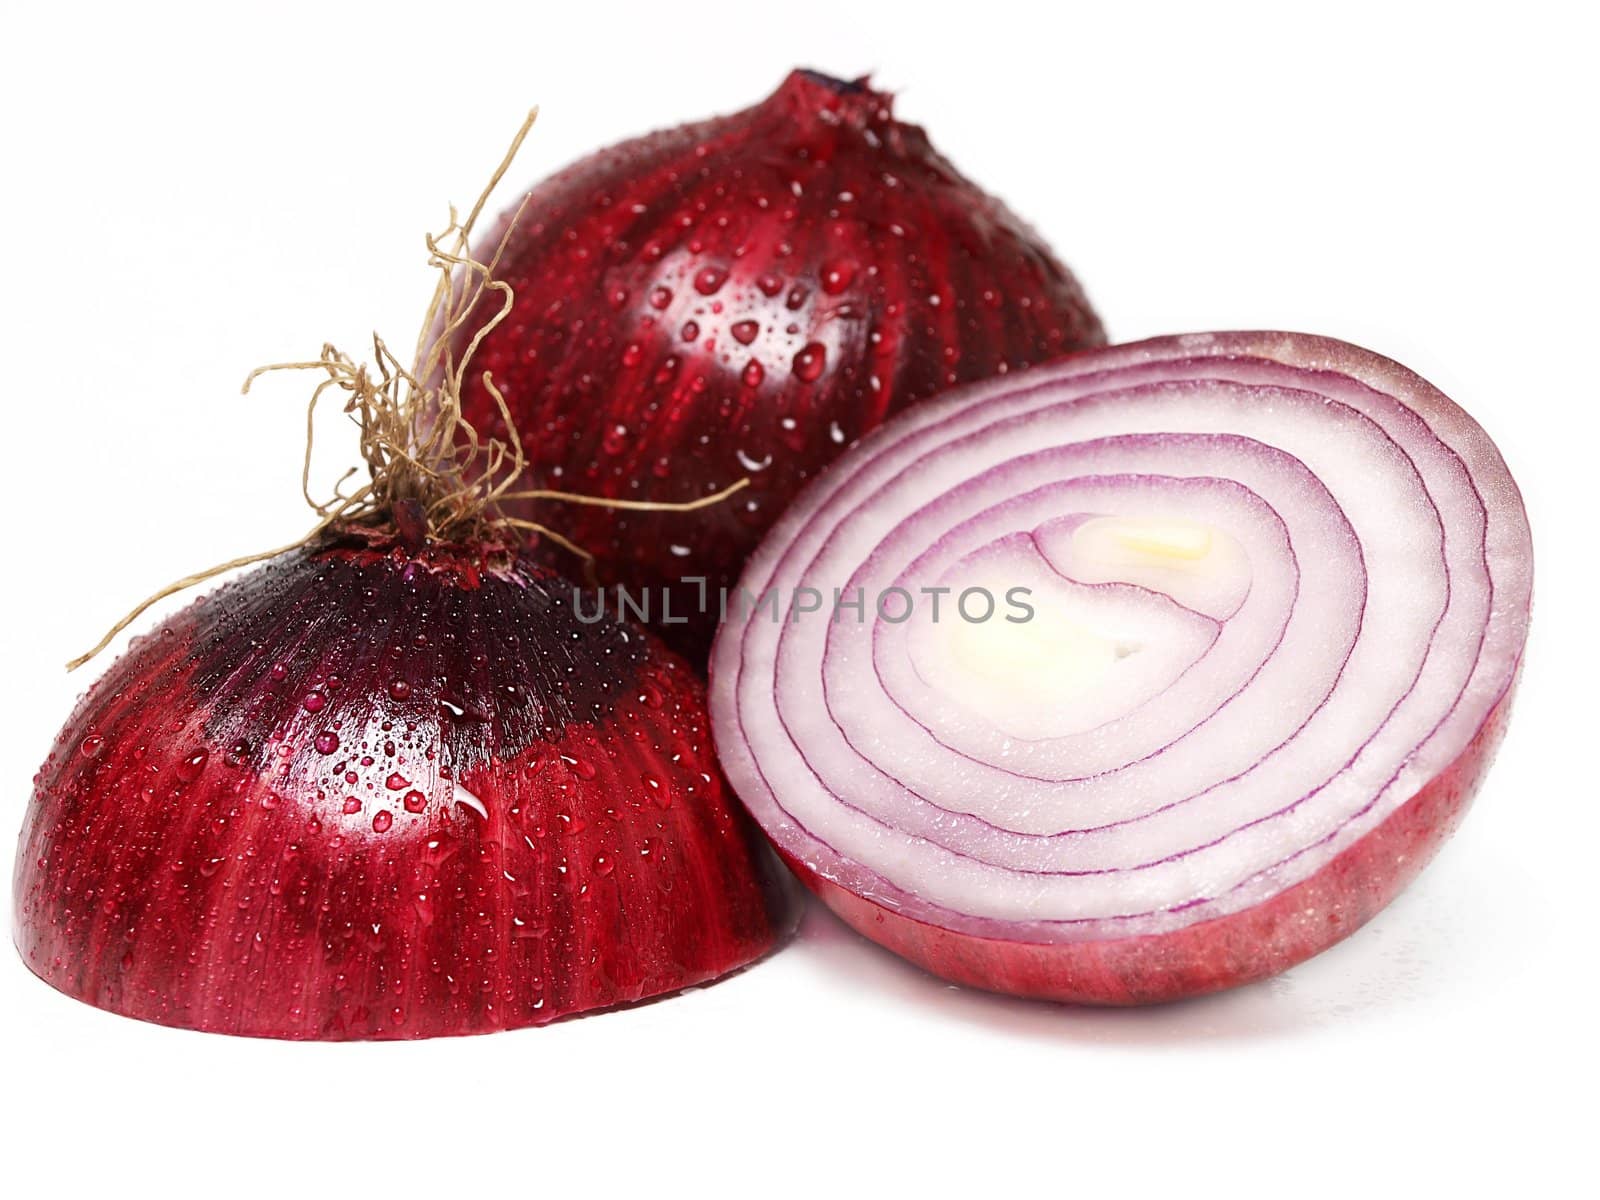 Red onion by Arvebettum